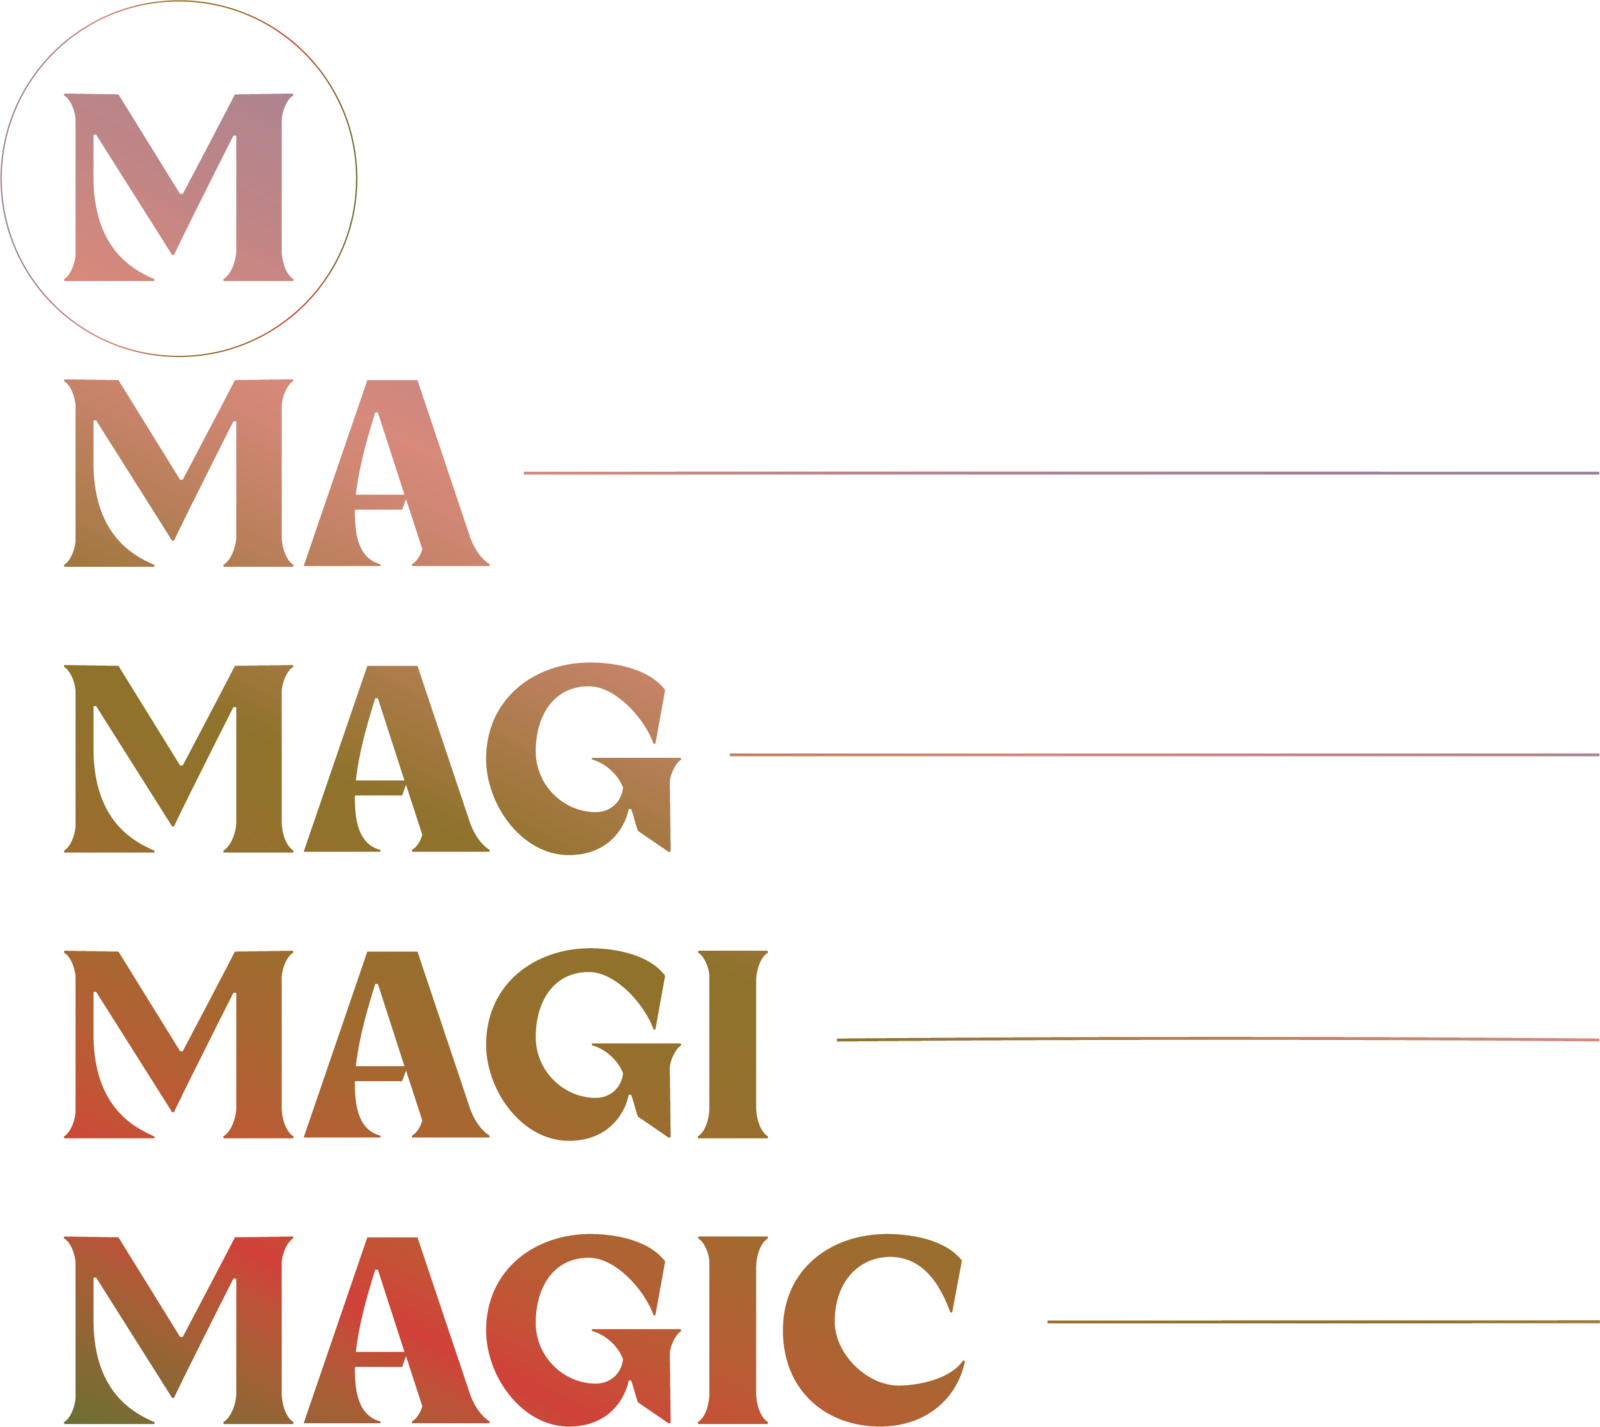 m-ma-mag-magi-magic